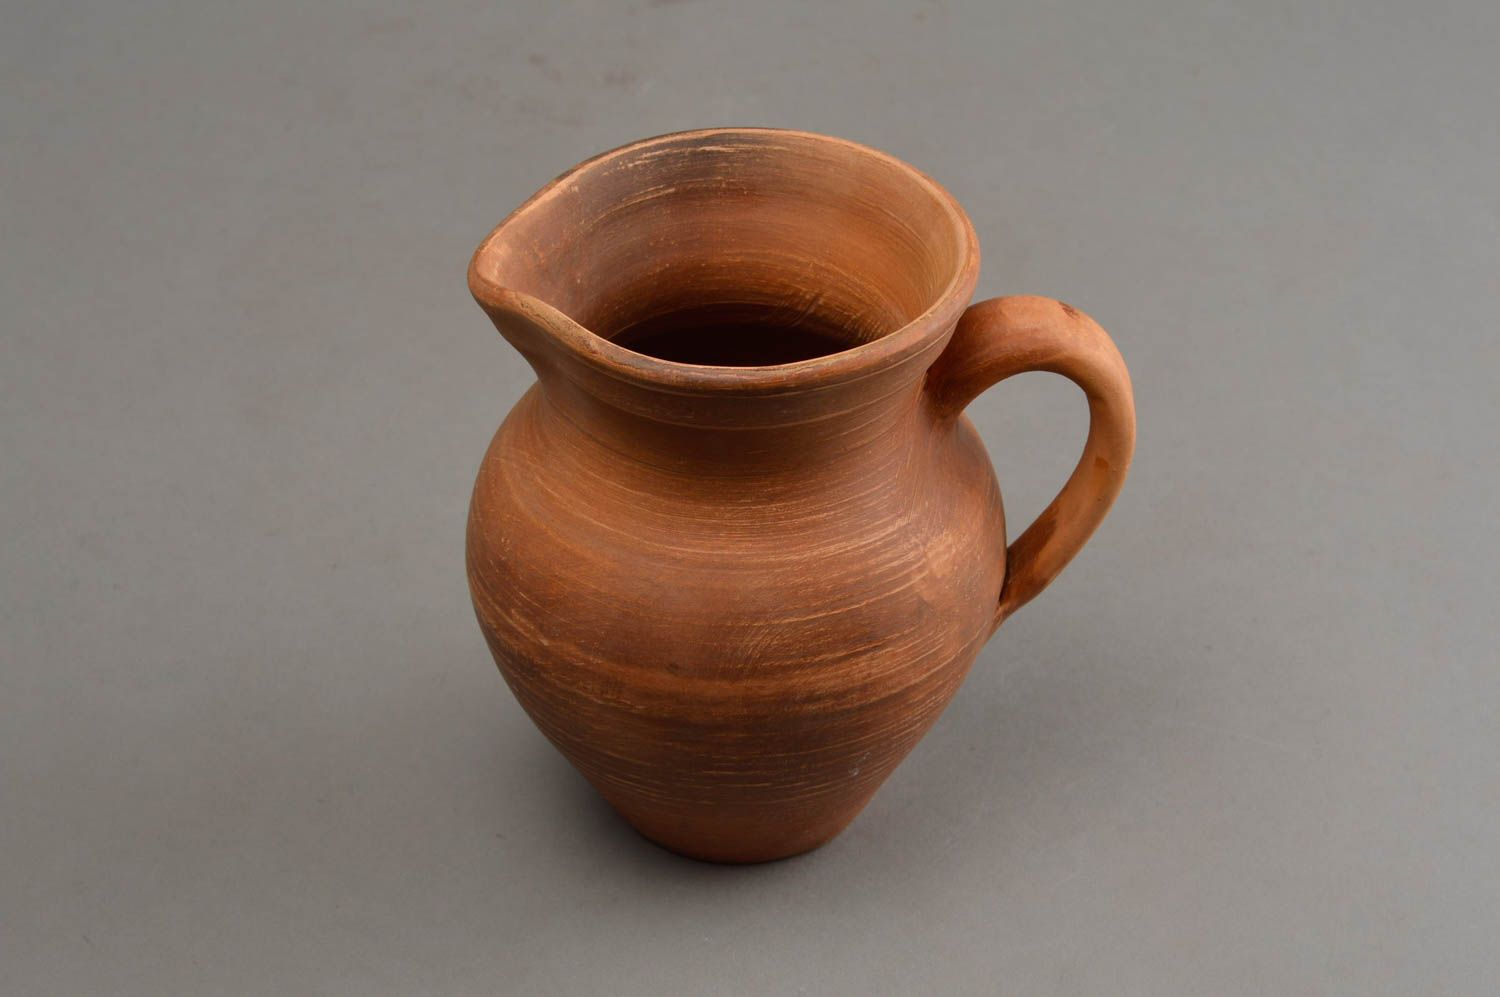 15 oz ceramic clay milk jug with handle with no lid 1 lb photo 3